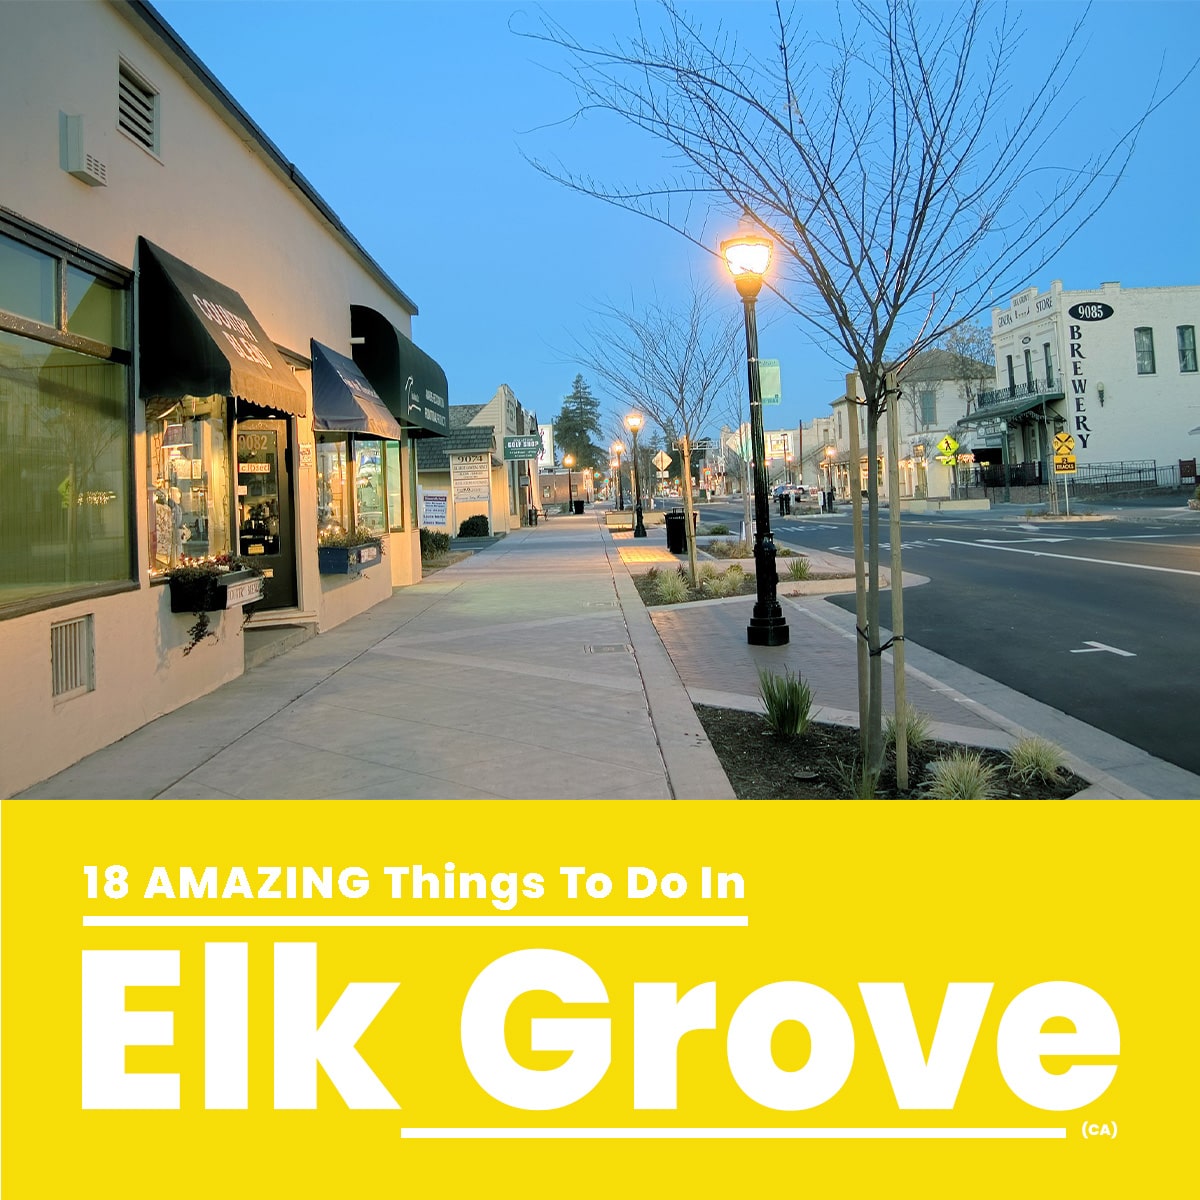 18 Best Things To Do In Elk Grove (CA) in 2022